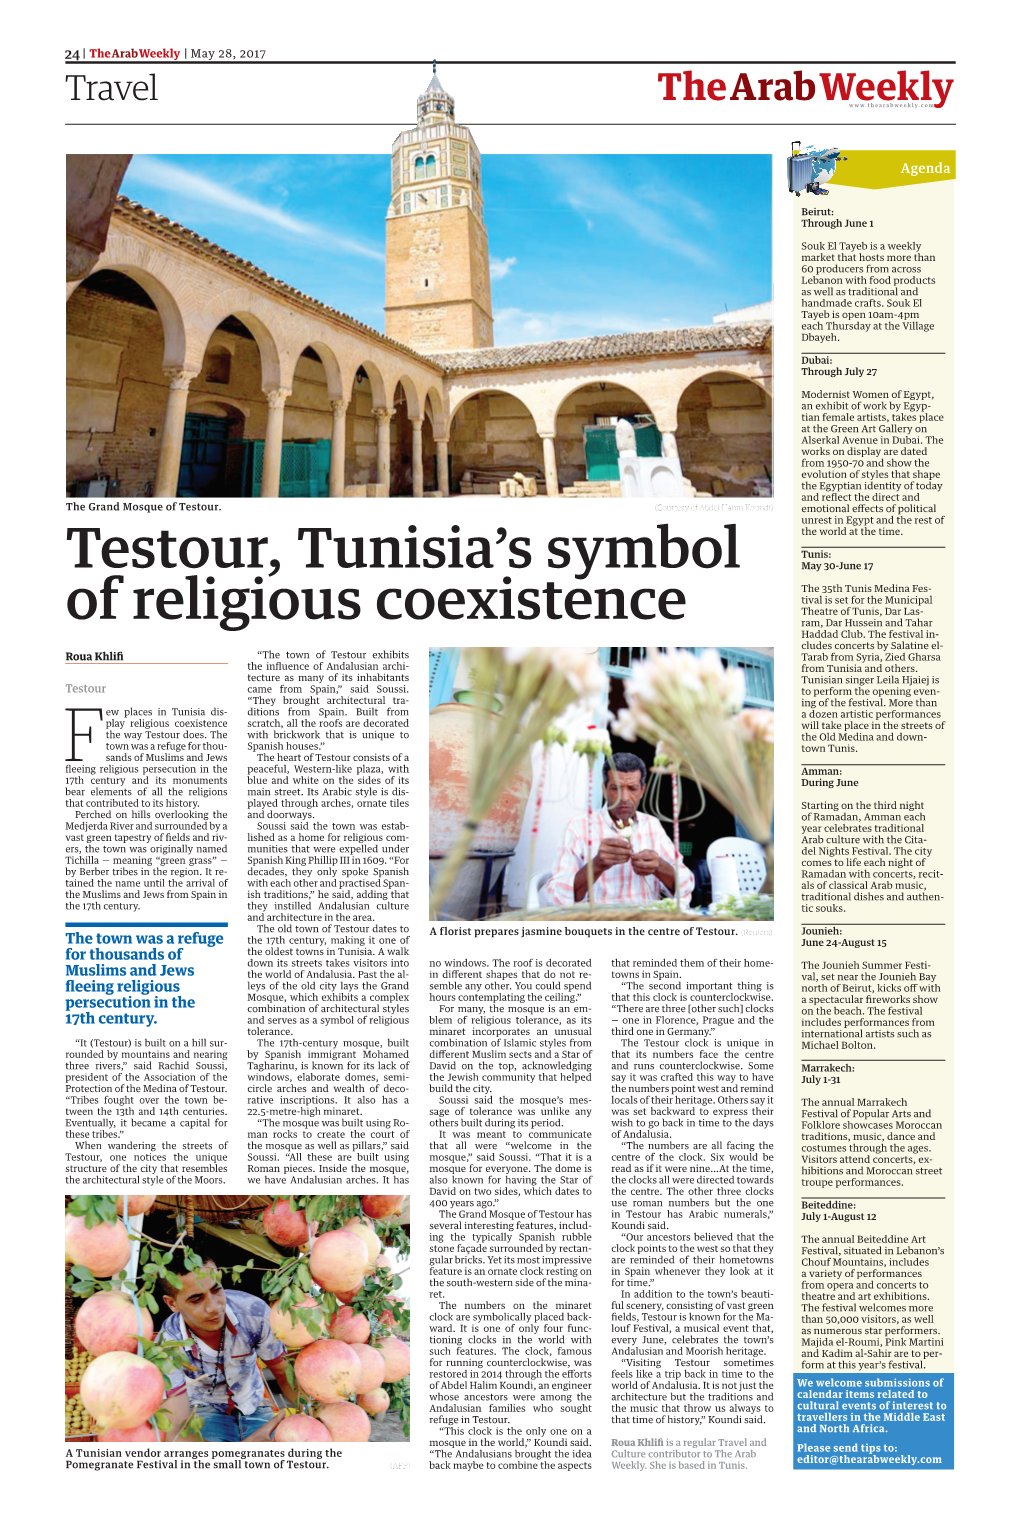 Testour, Tunisia's Symbol of Religious Coexistence